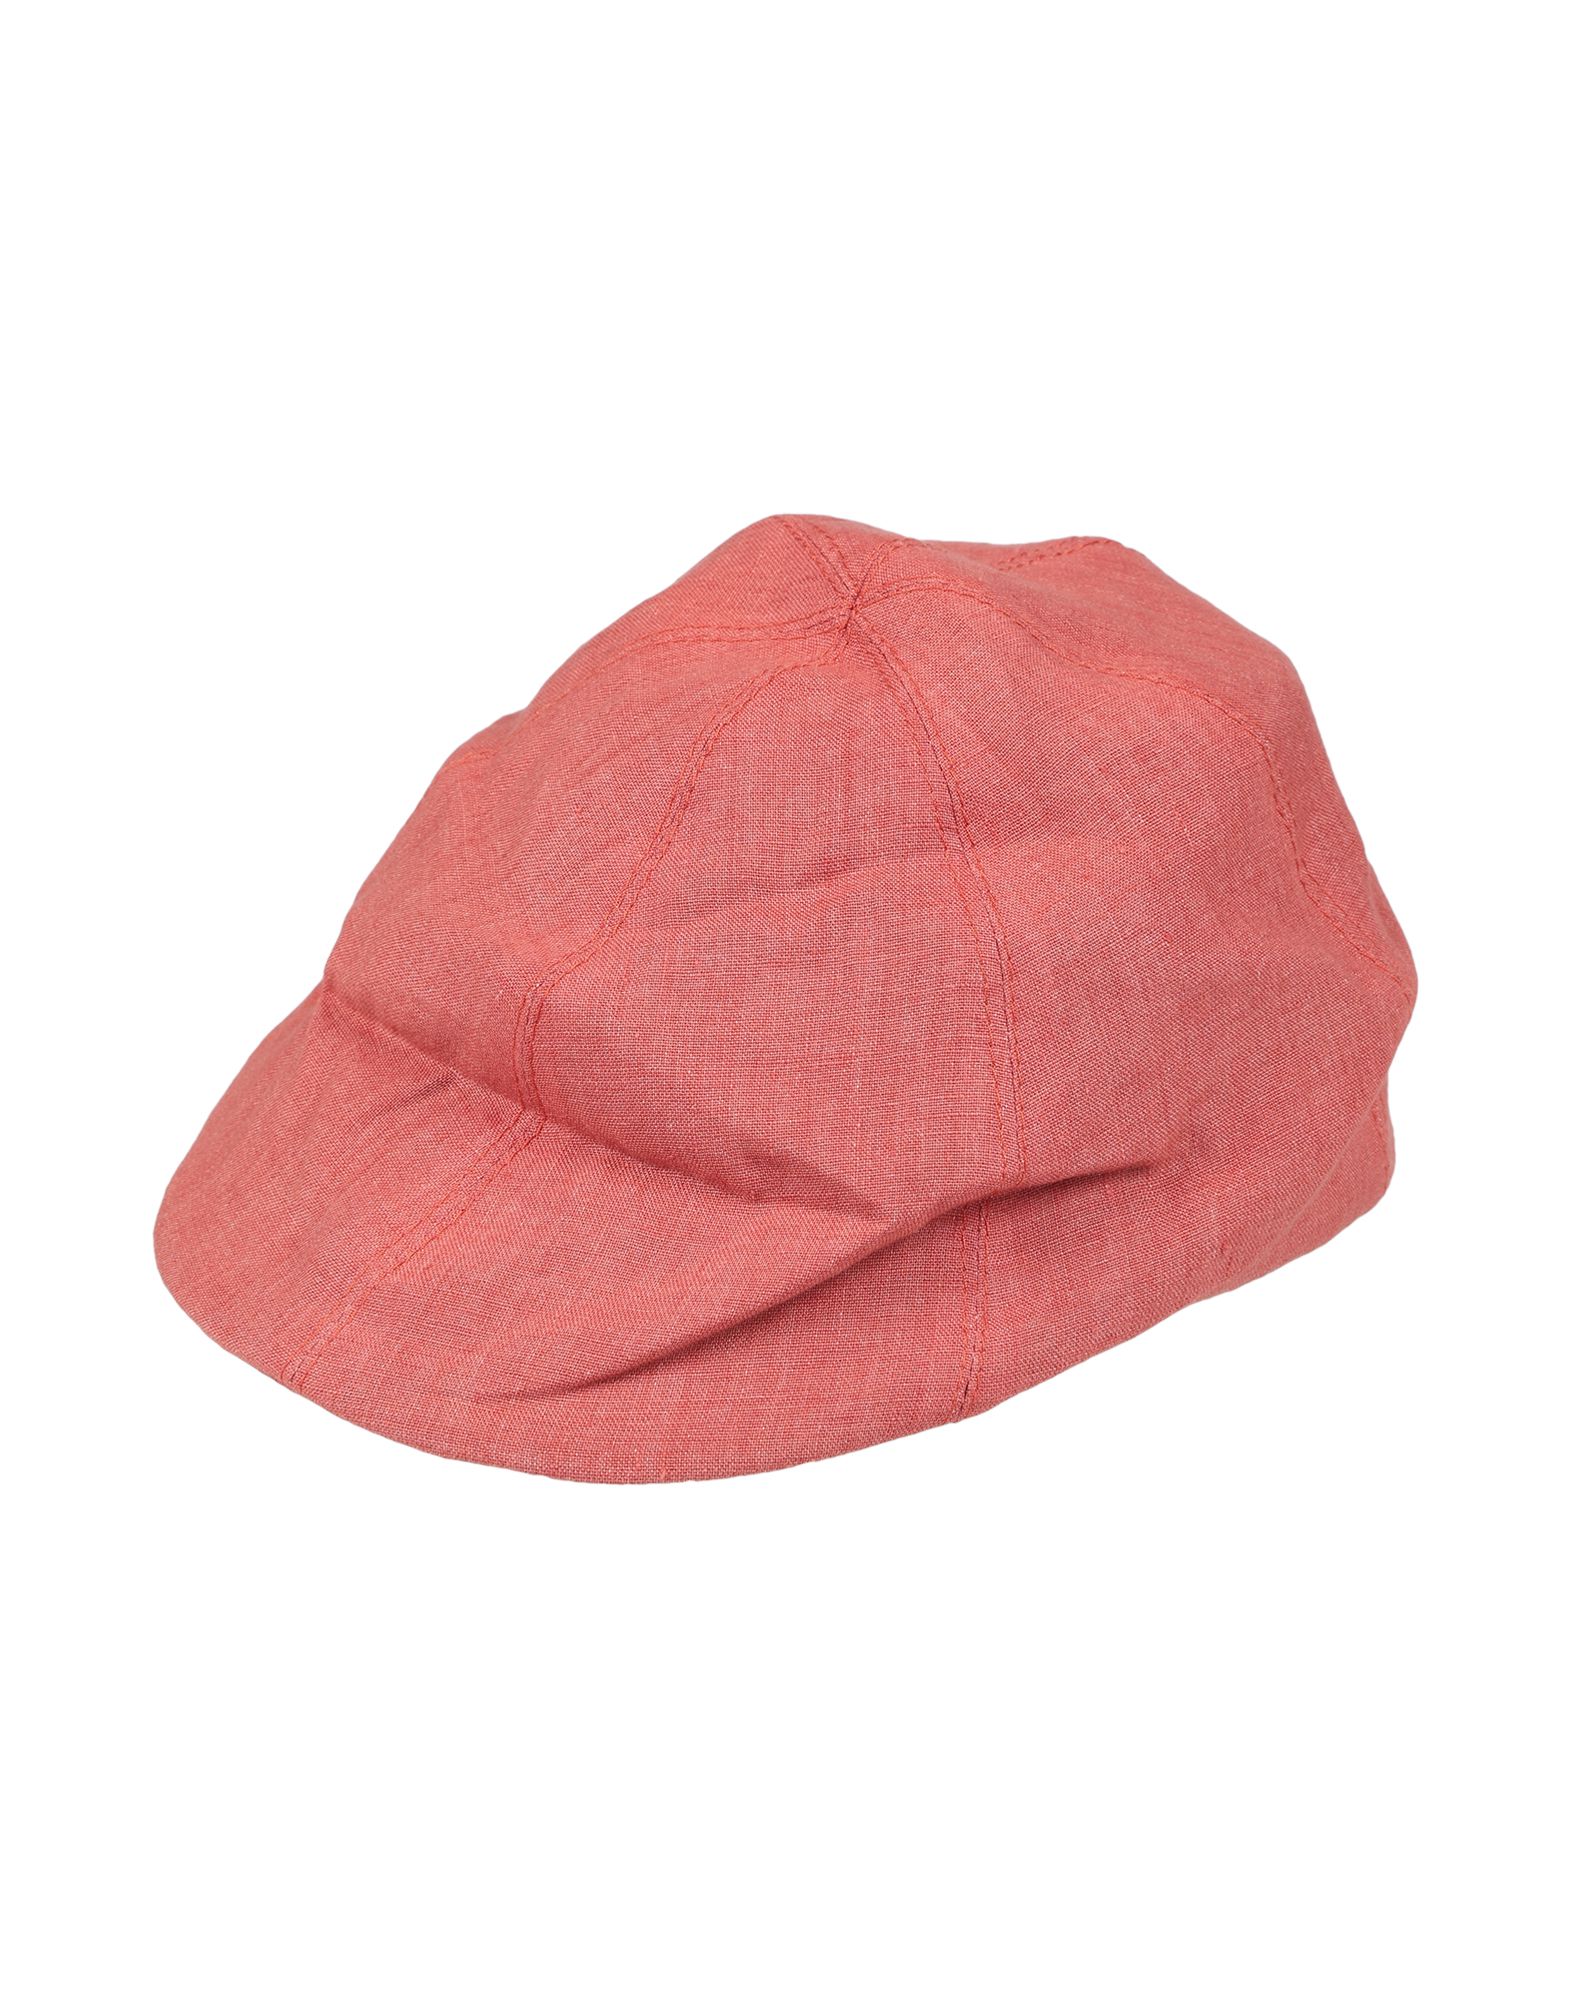 《送料無料》GREVI メンズ 帽子 赤茶色 S 麻 100%